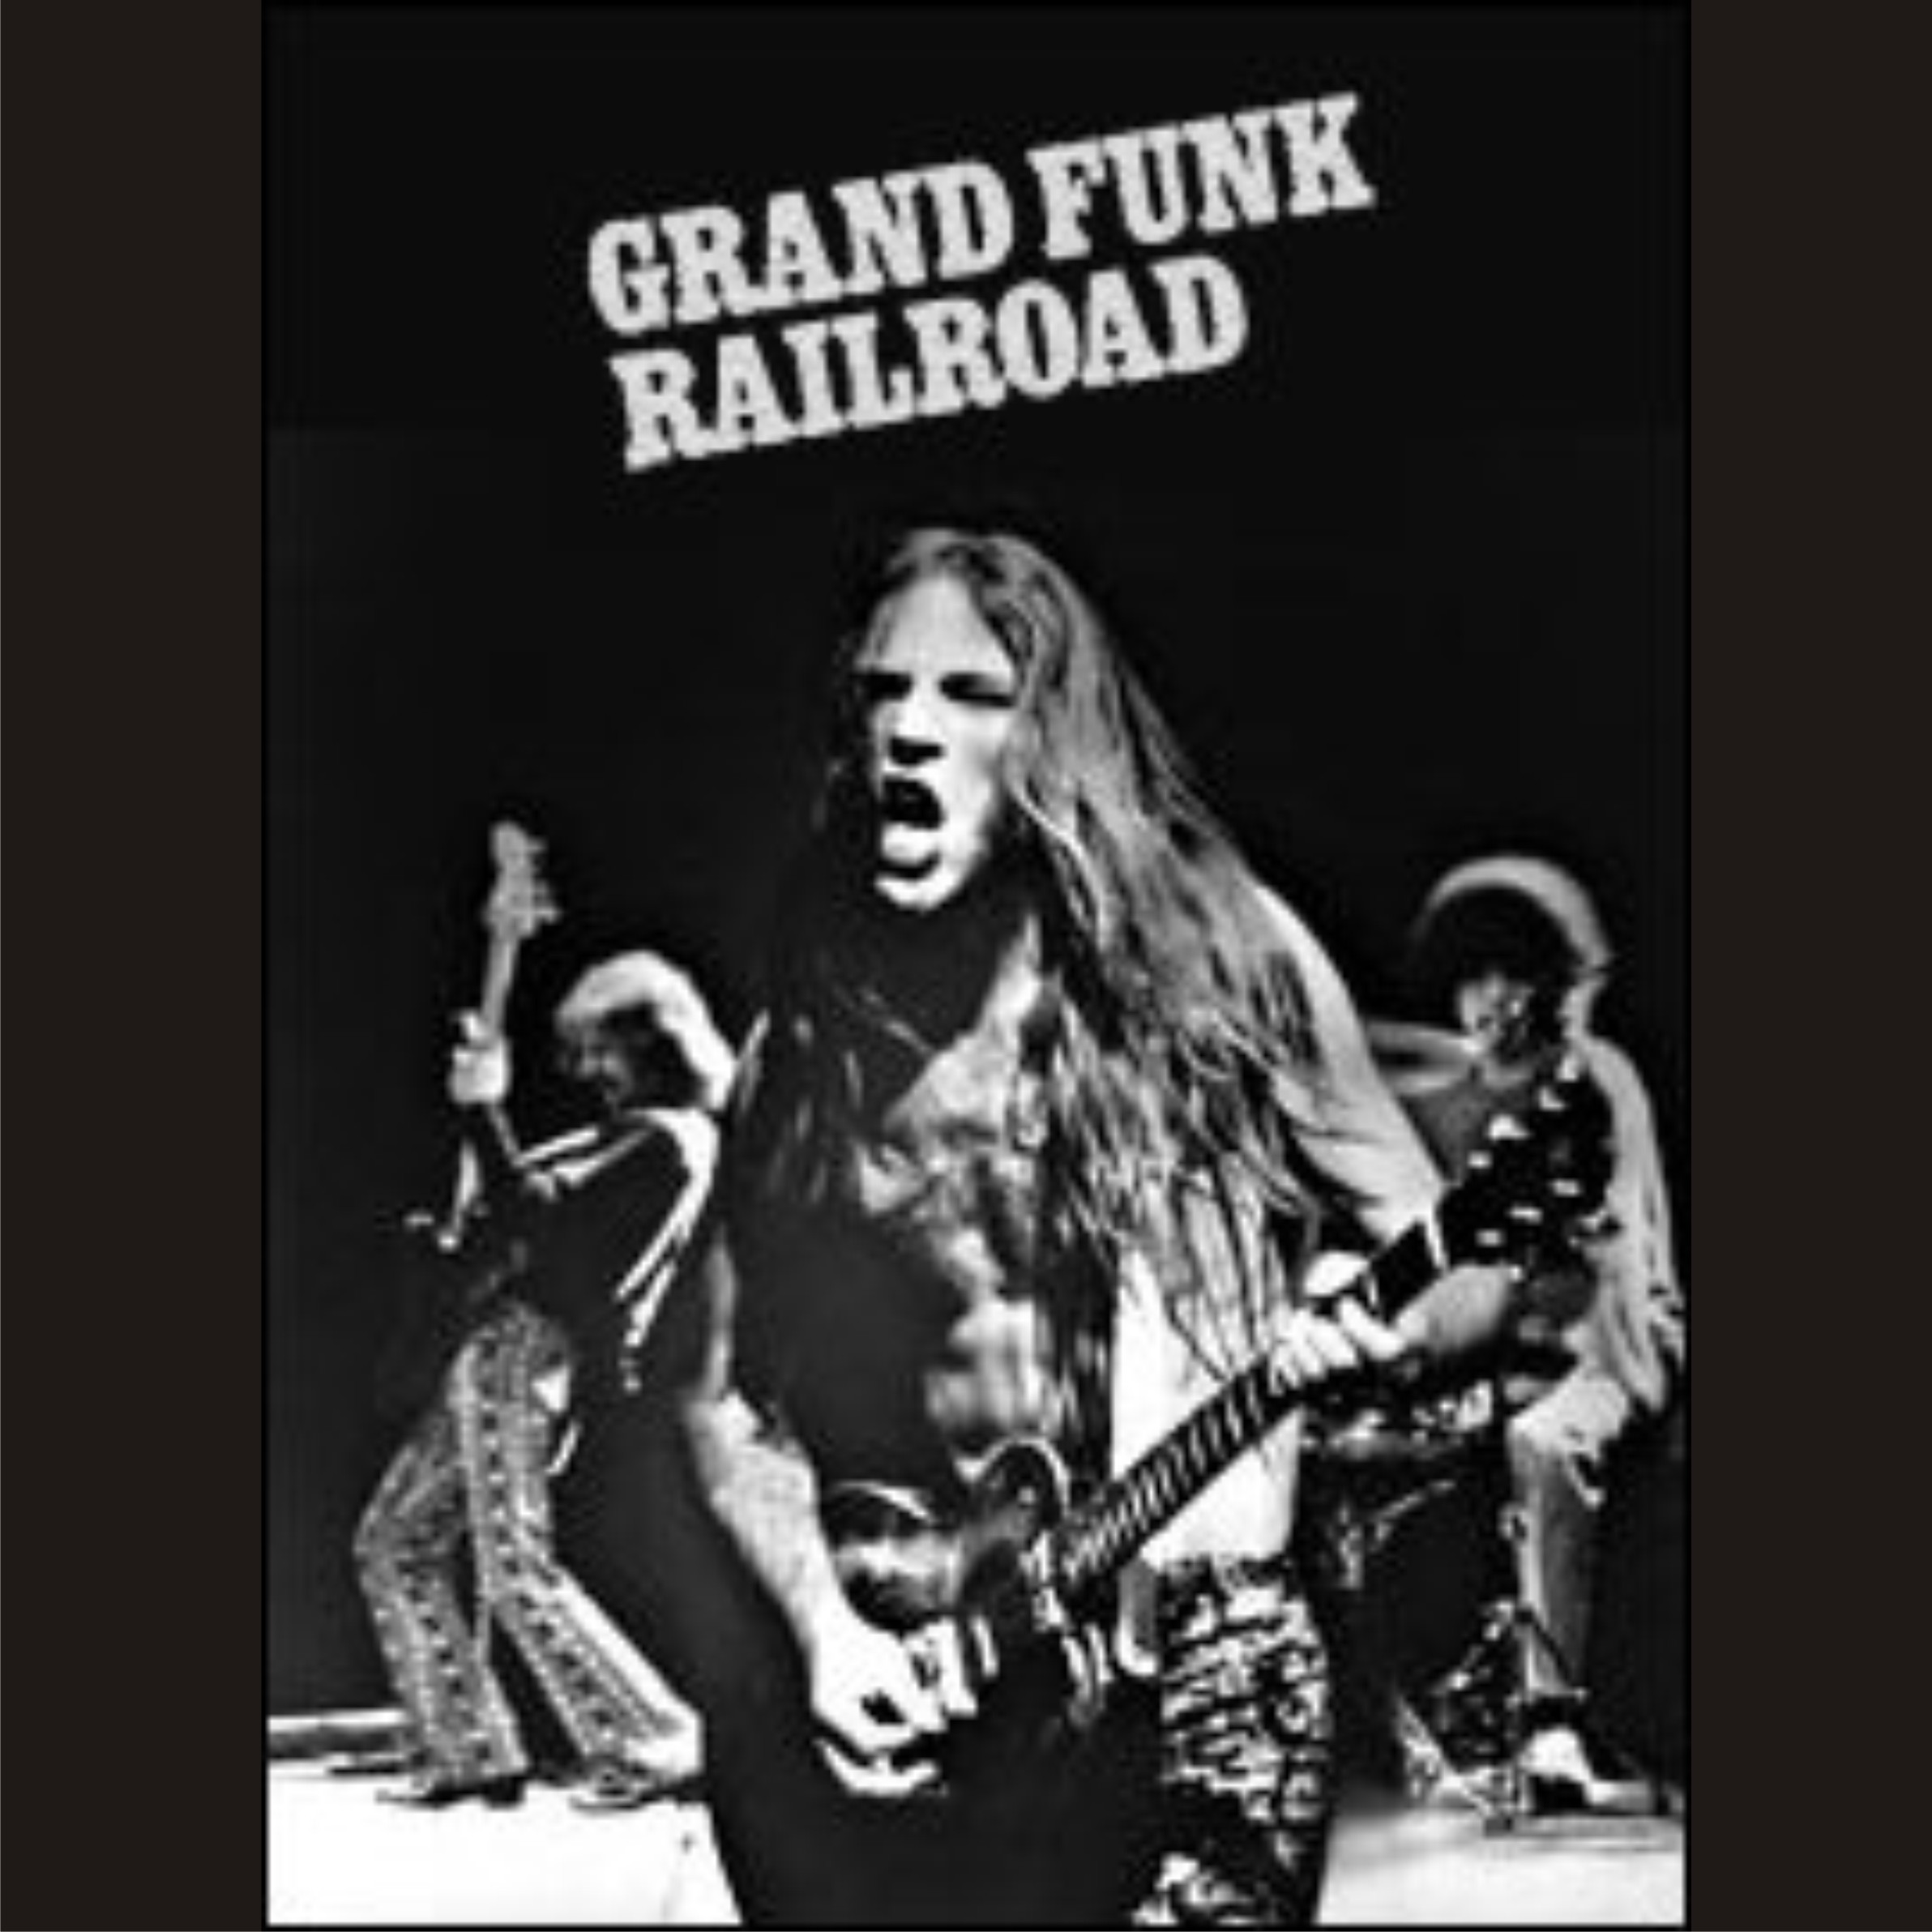 Grand funk railroad дискография скачать торрент mp3